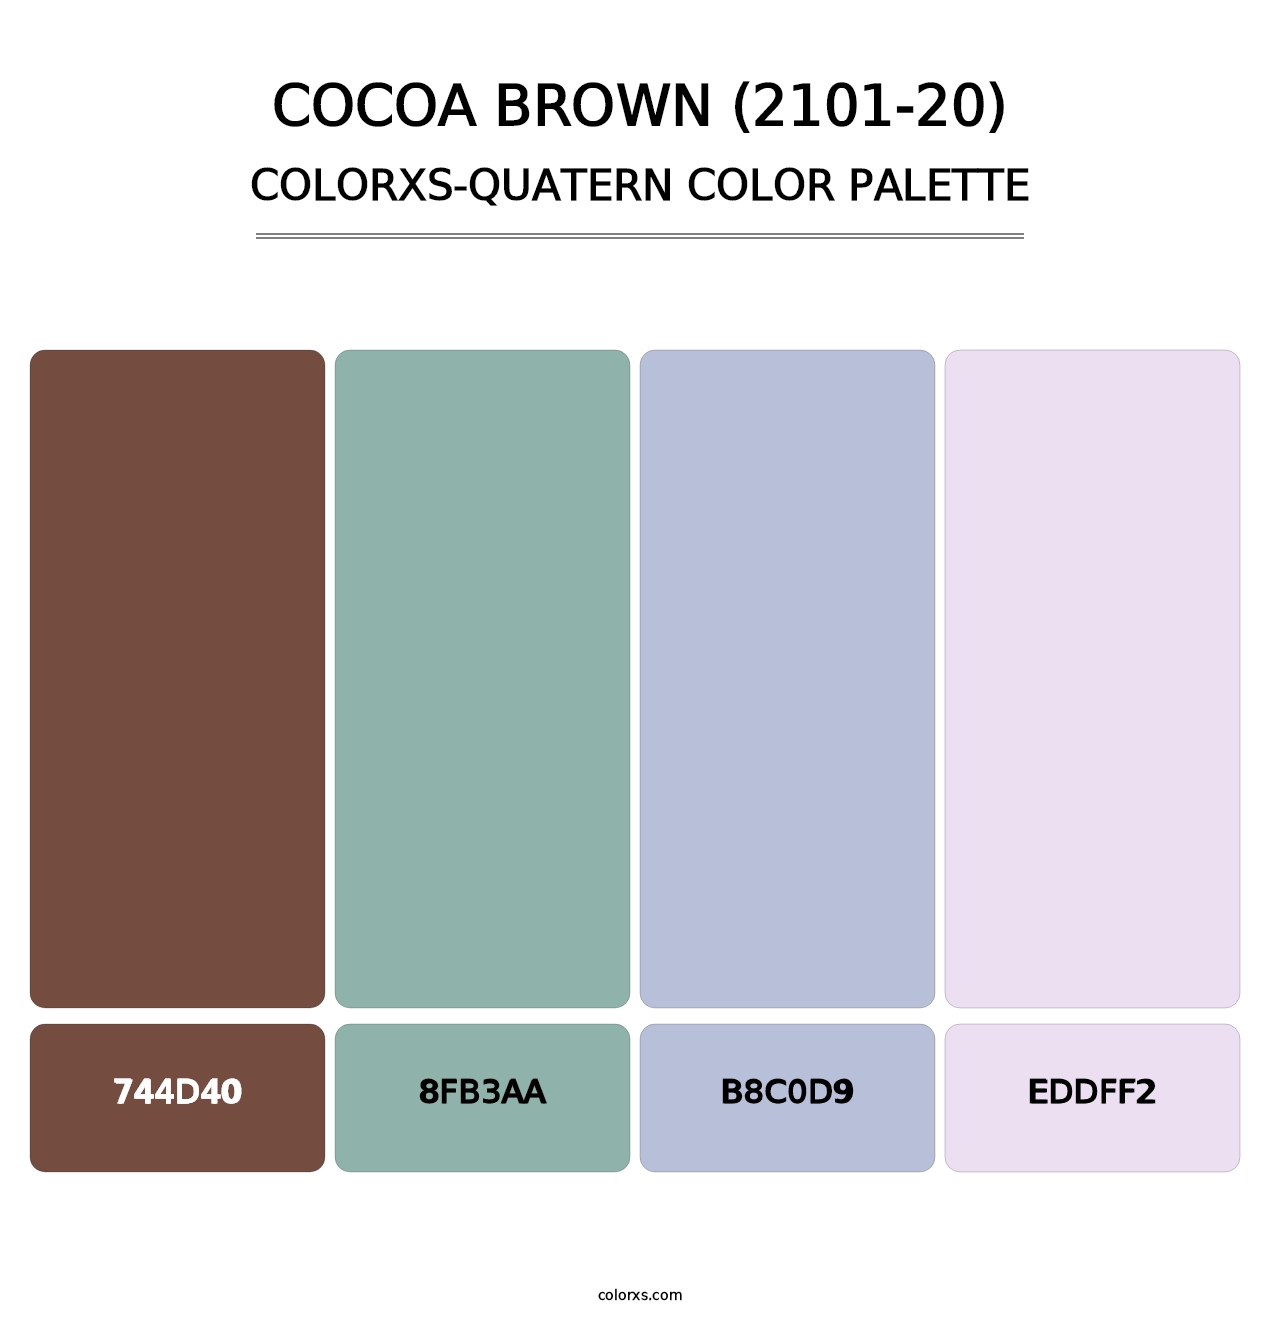 Cocoa Brown (2101-20) - Colorxs Quatern Palette